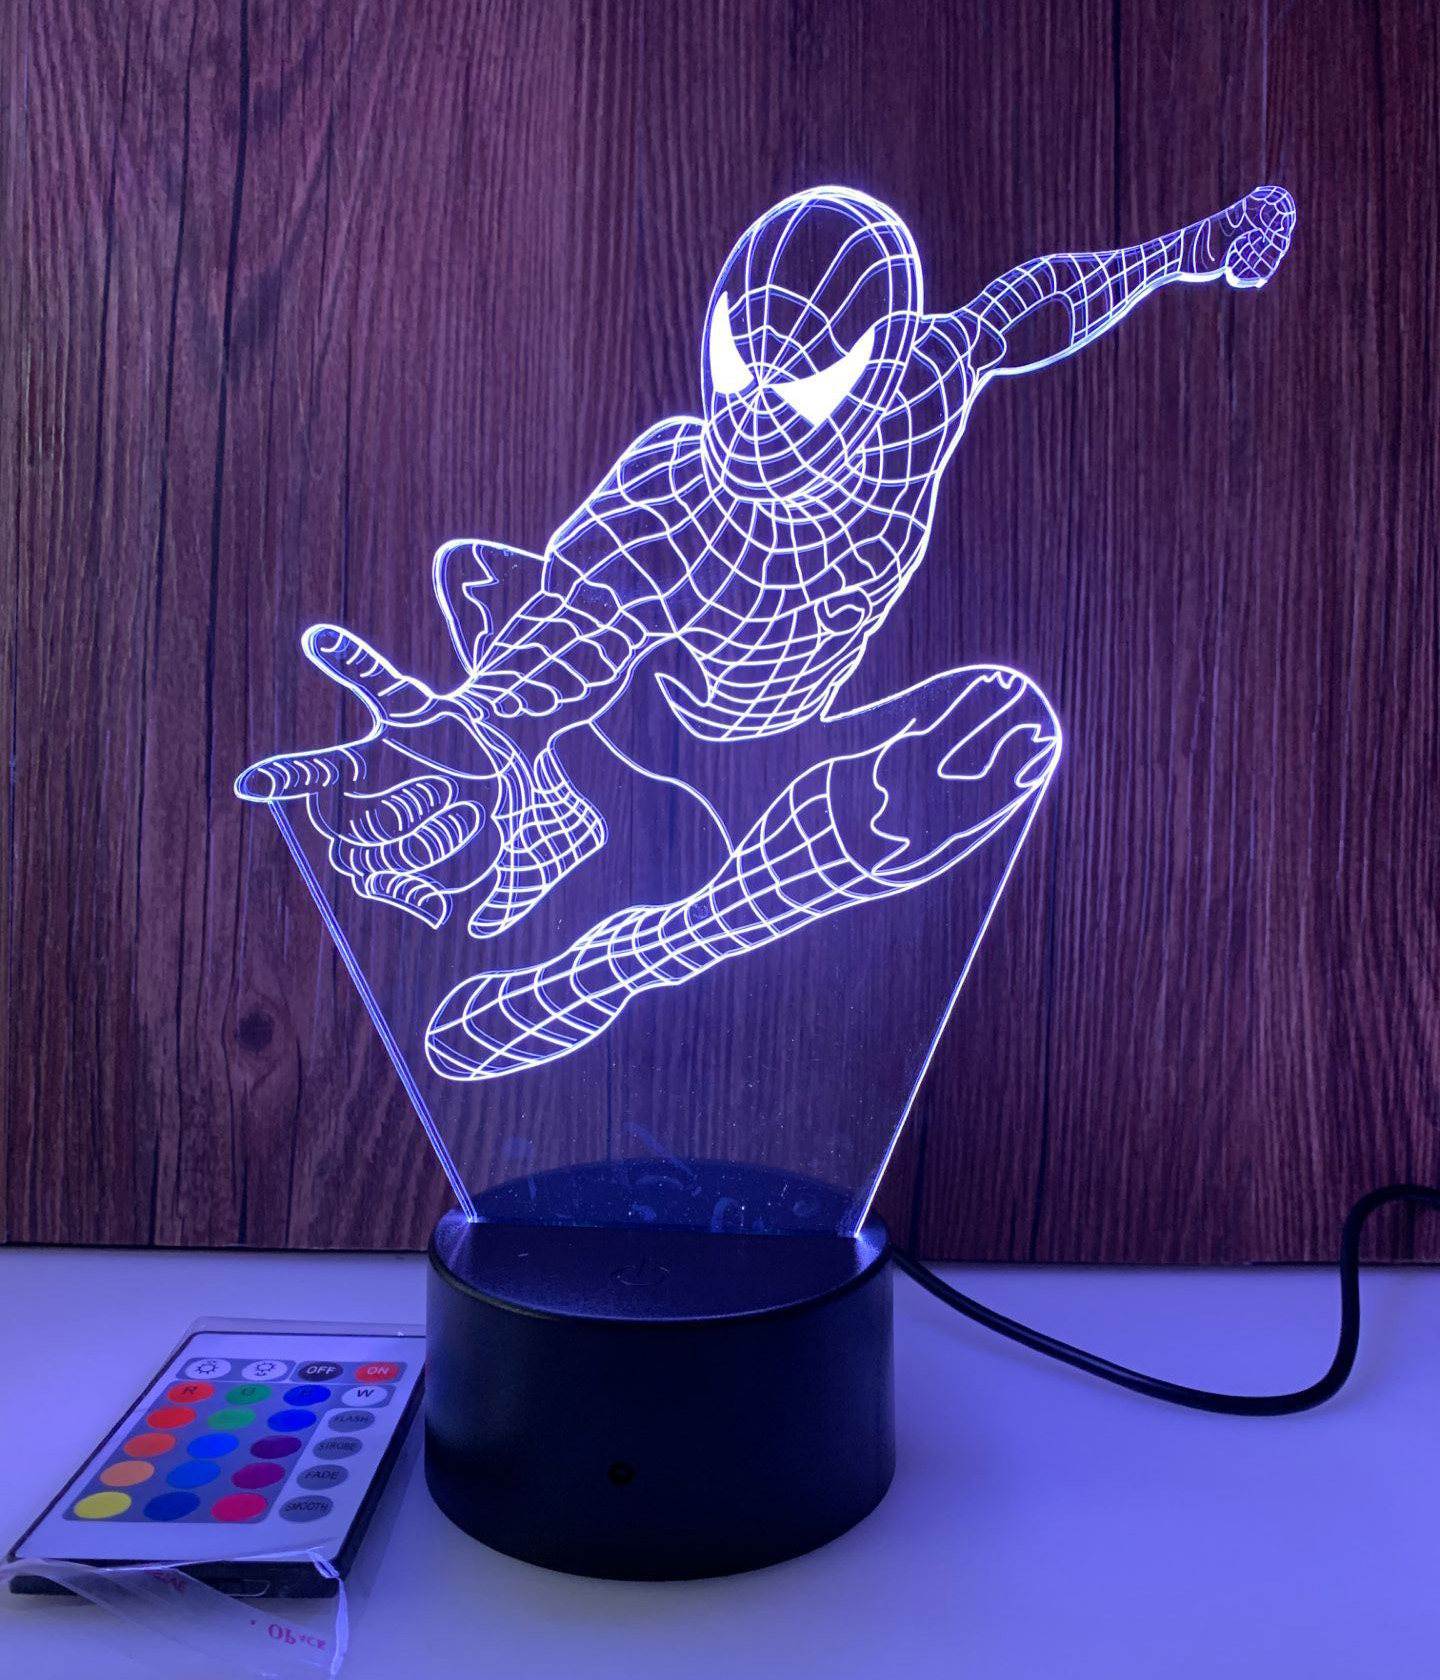 Đèn led 3D đa họa tiết đẹp nhất - Đèn led 3D hình hươu đẹp nhất 2020 - Cao 254x173x4 mm